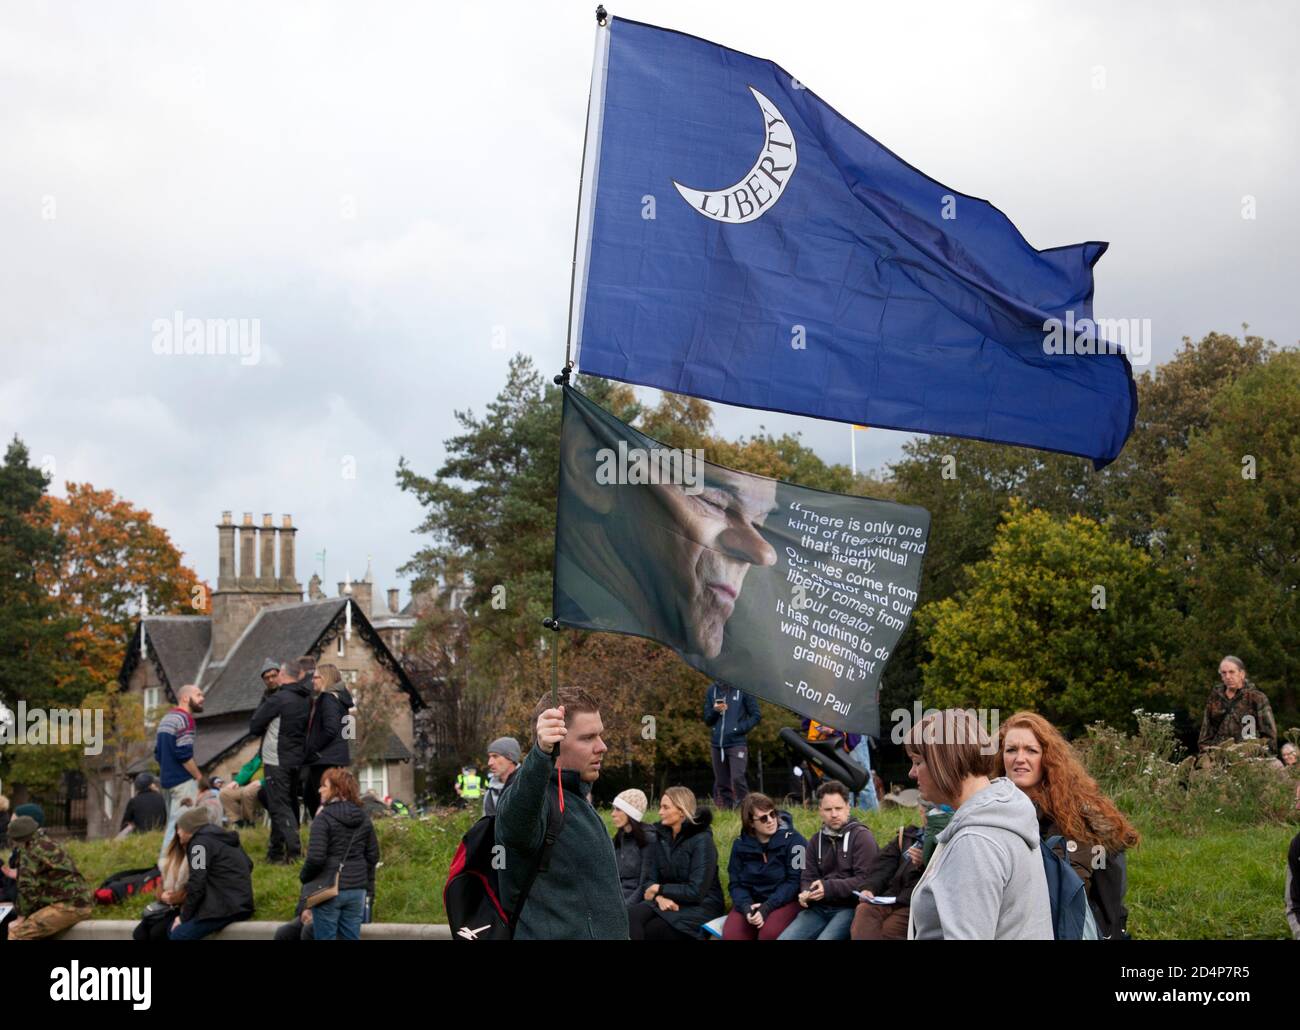 Demonstranten vor dem schottischen Parlament in Edinburgh, Schottland, Großbritannien. 10. Oktober 2020. Organisiert von Schottland gegen Lockdown, die das obligatorische Tragen von Gesichtsmasken für nicht notwendig halten und nicht mit dem Scottish & U.K Governments Coronavirus Act und Lockdown einverstanden sind. Quelle: Arch White/ Alamy Live News Stockfoto